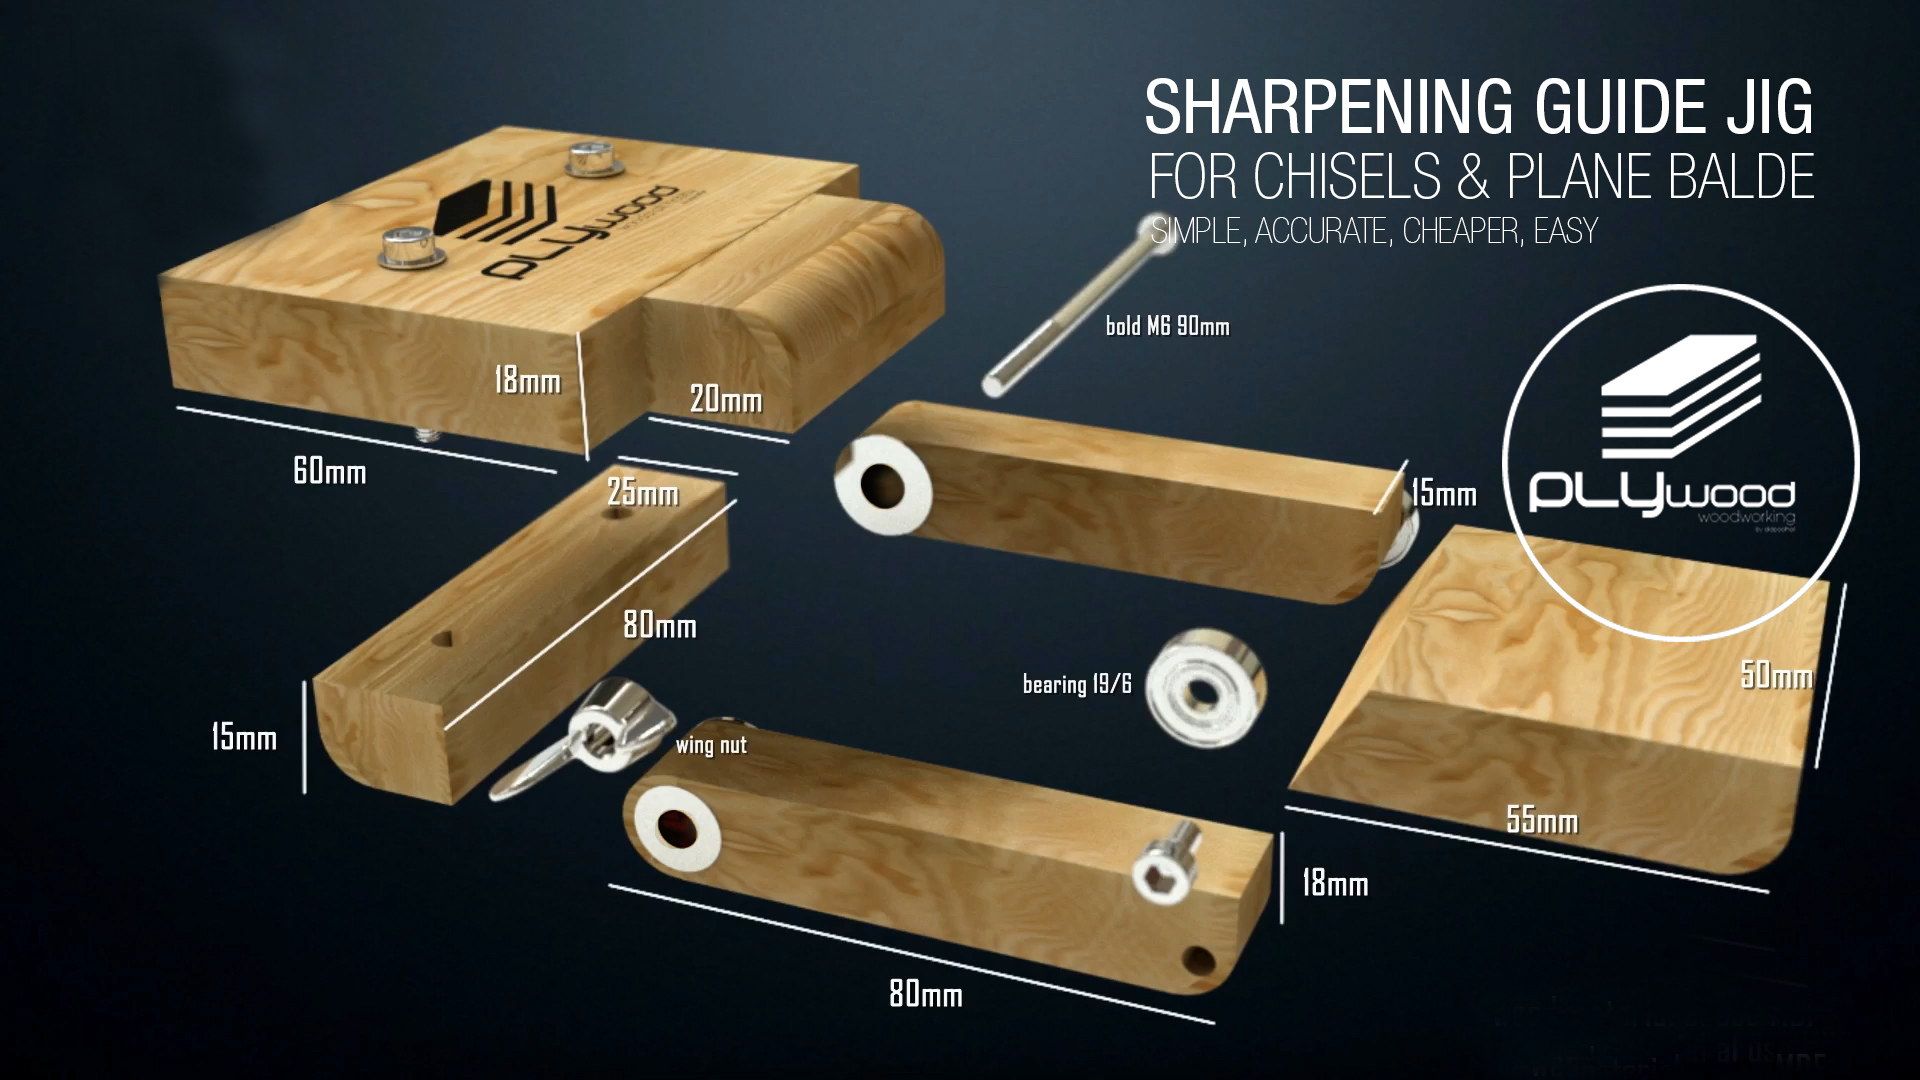 DIY Sharpening Jig for Chisels & Plane Blades 